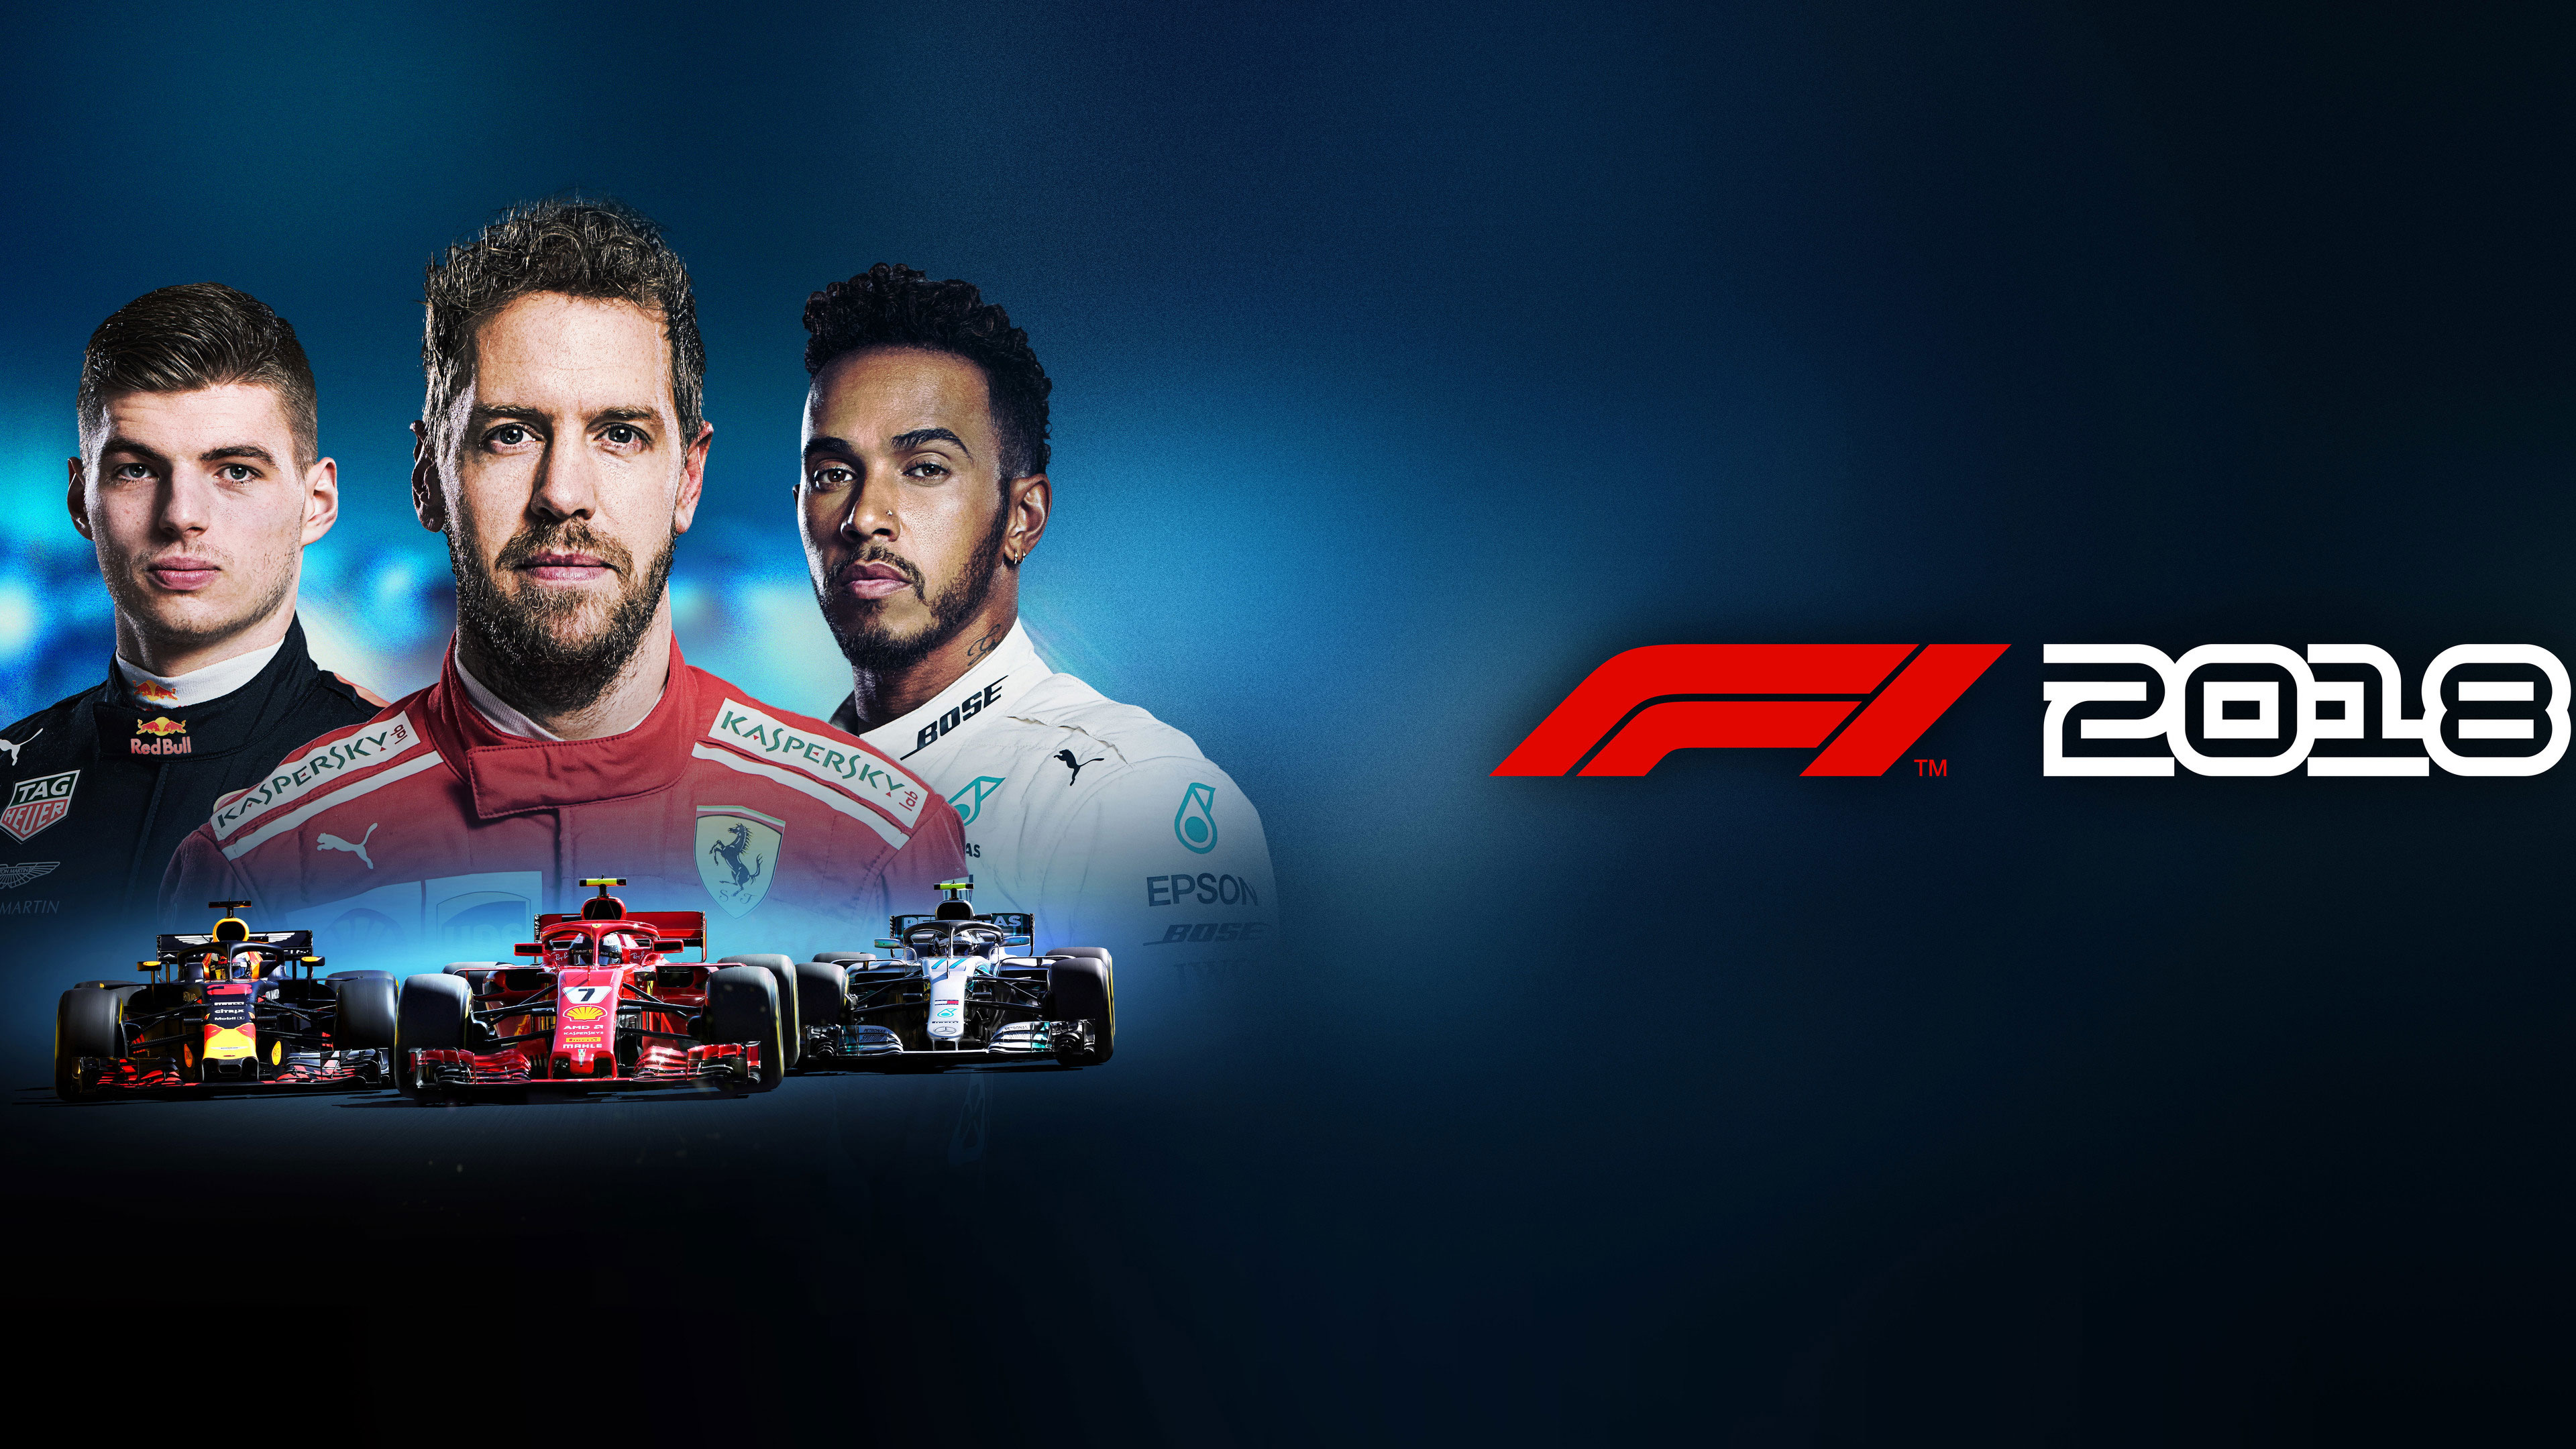 F1 2018 Wallpapers in Ultra HD | 4K - Gameranx